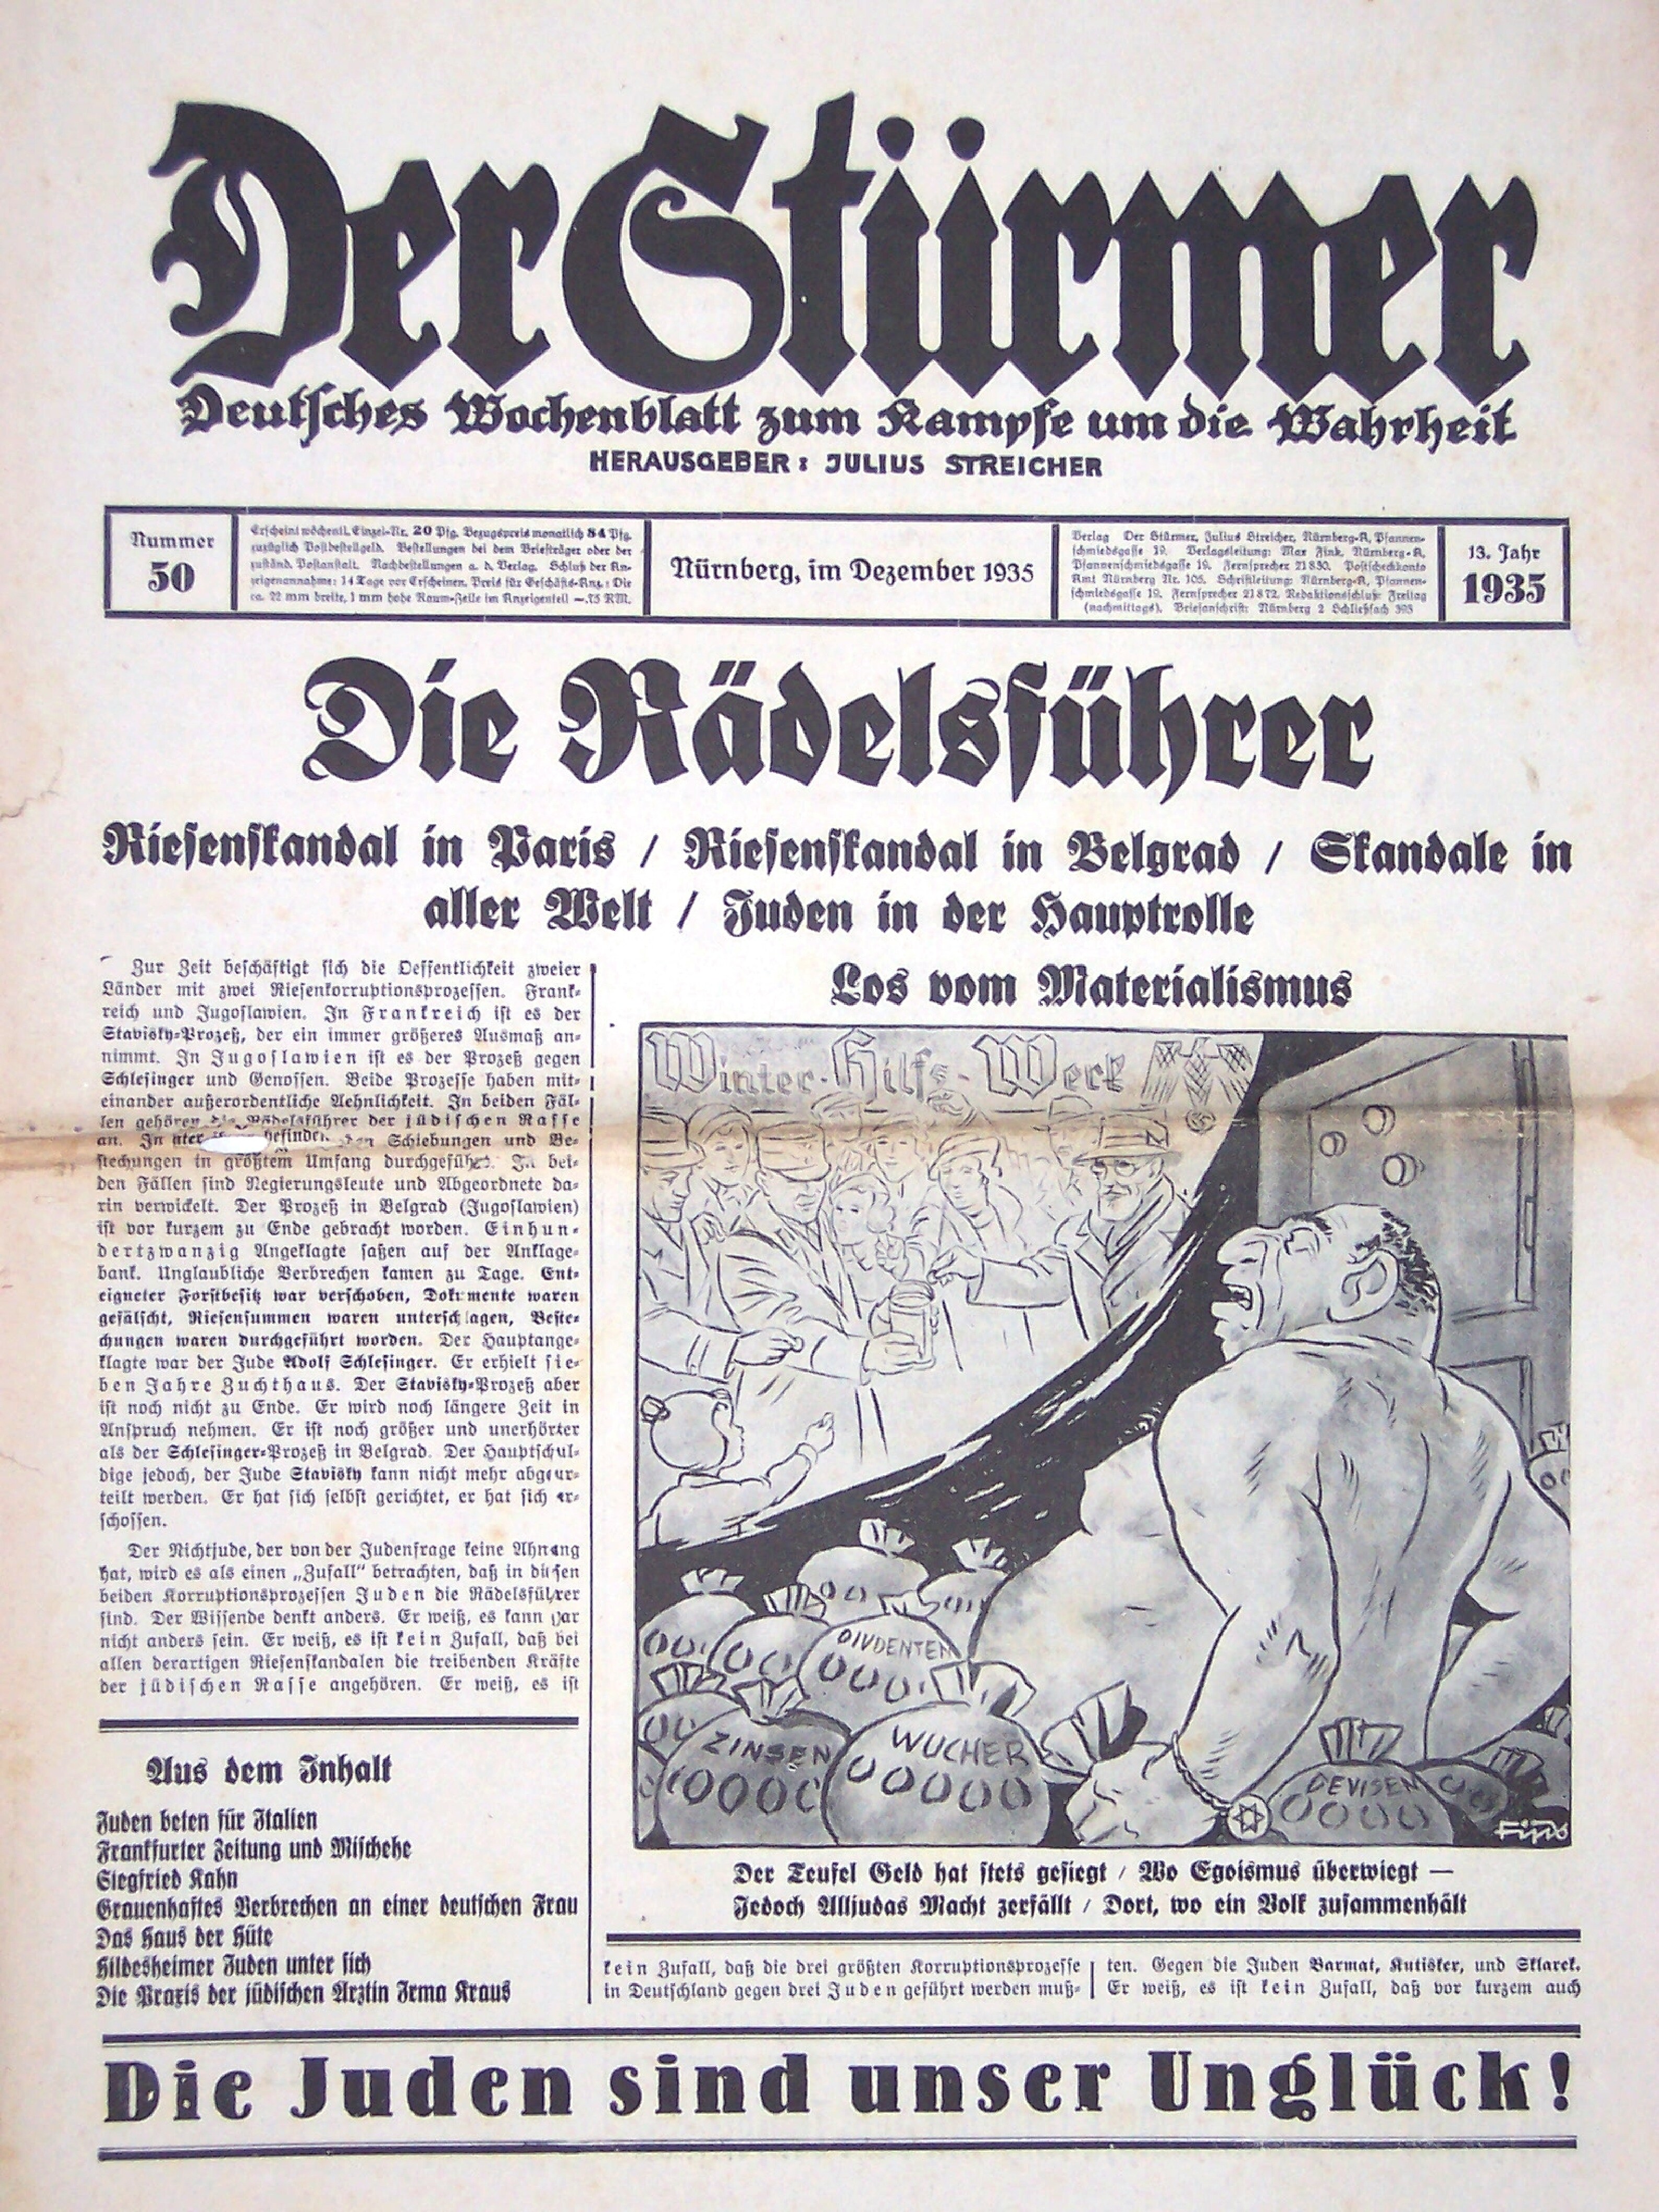 Der Stürmer - 1935 Nr. 50 - Die Rädelsführer